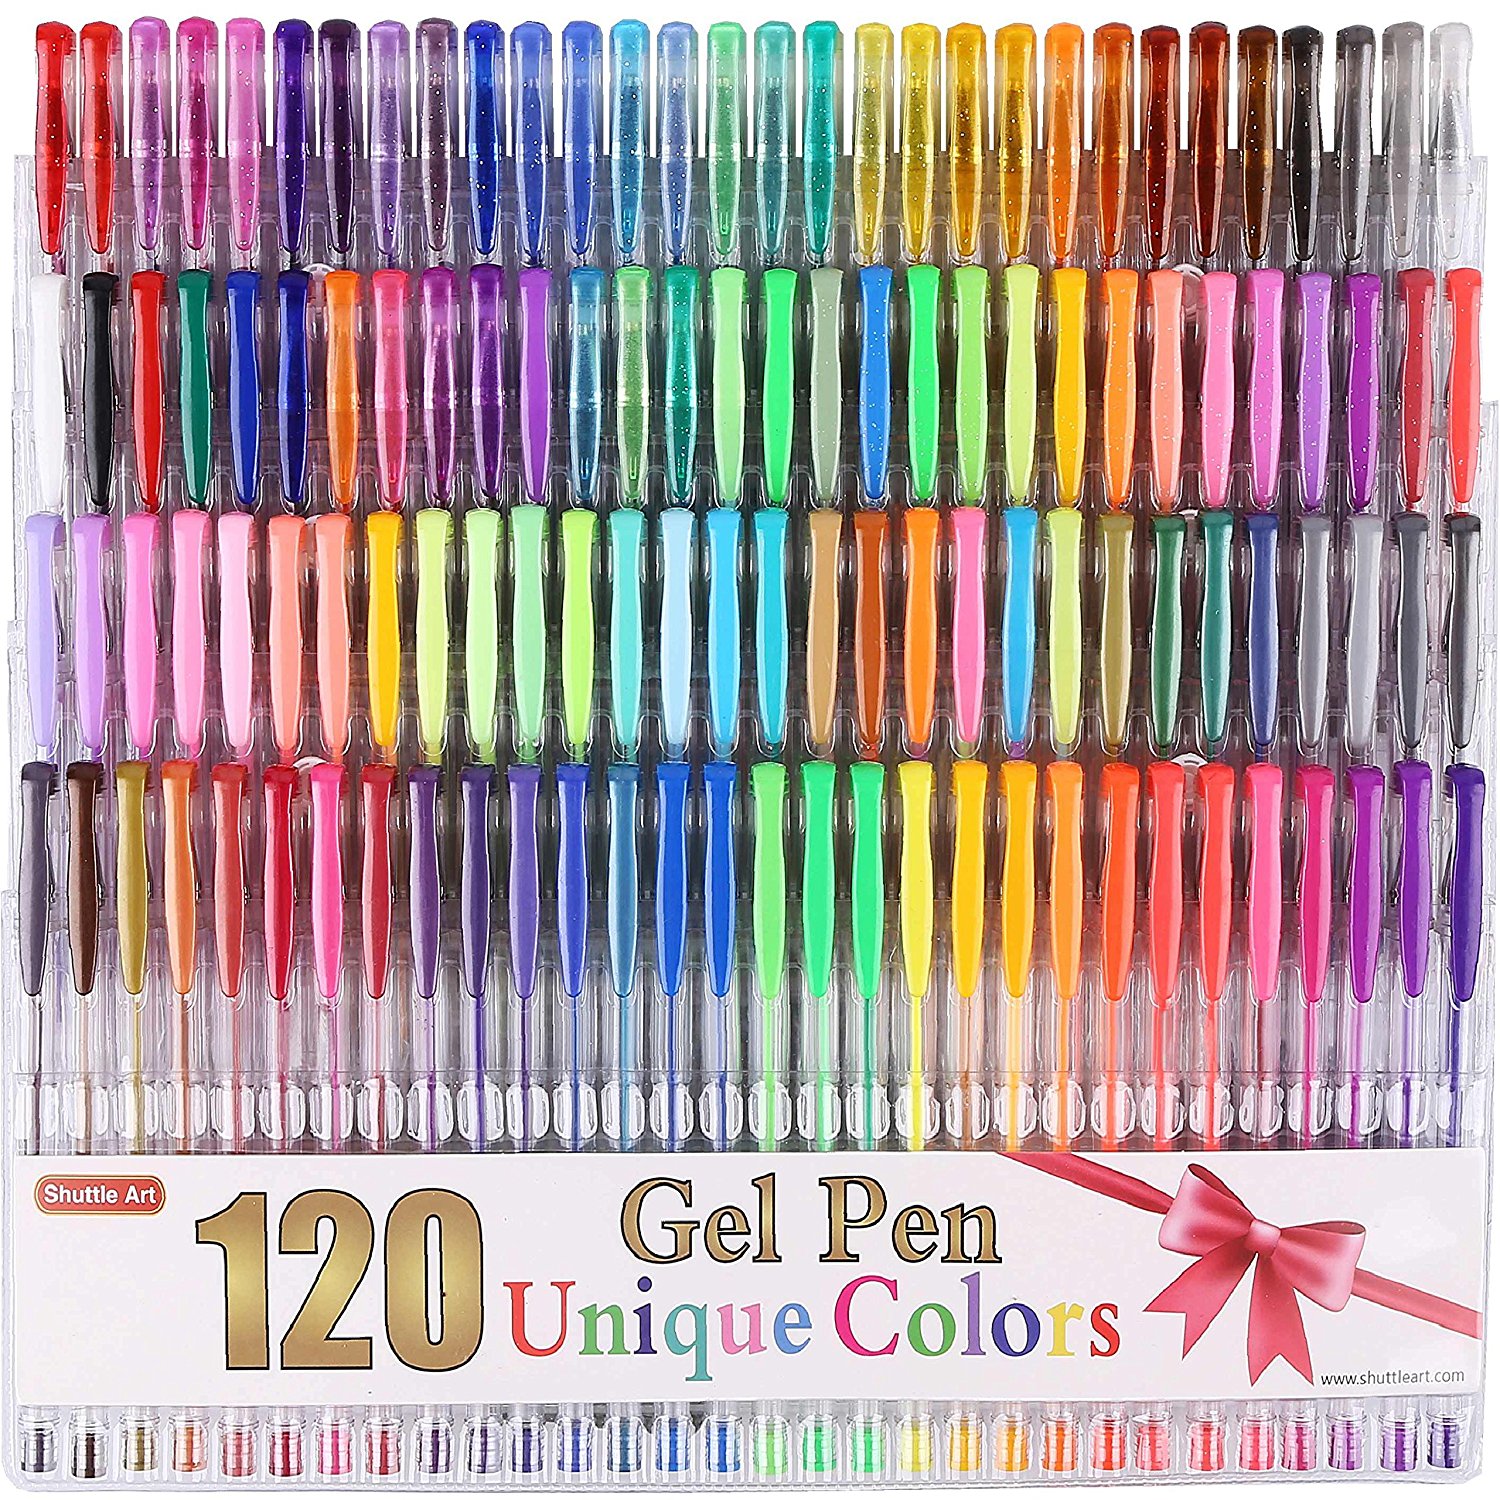 Shuttle Art Gel Pens - 120 Unique Colors - Peachy PlanIt